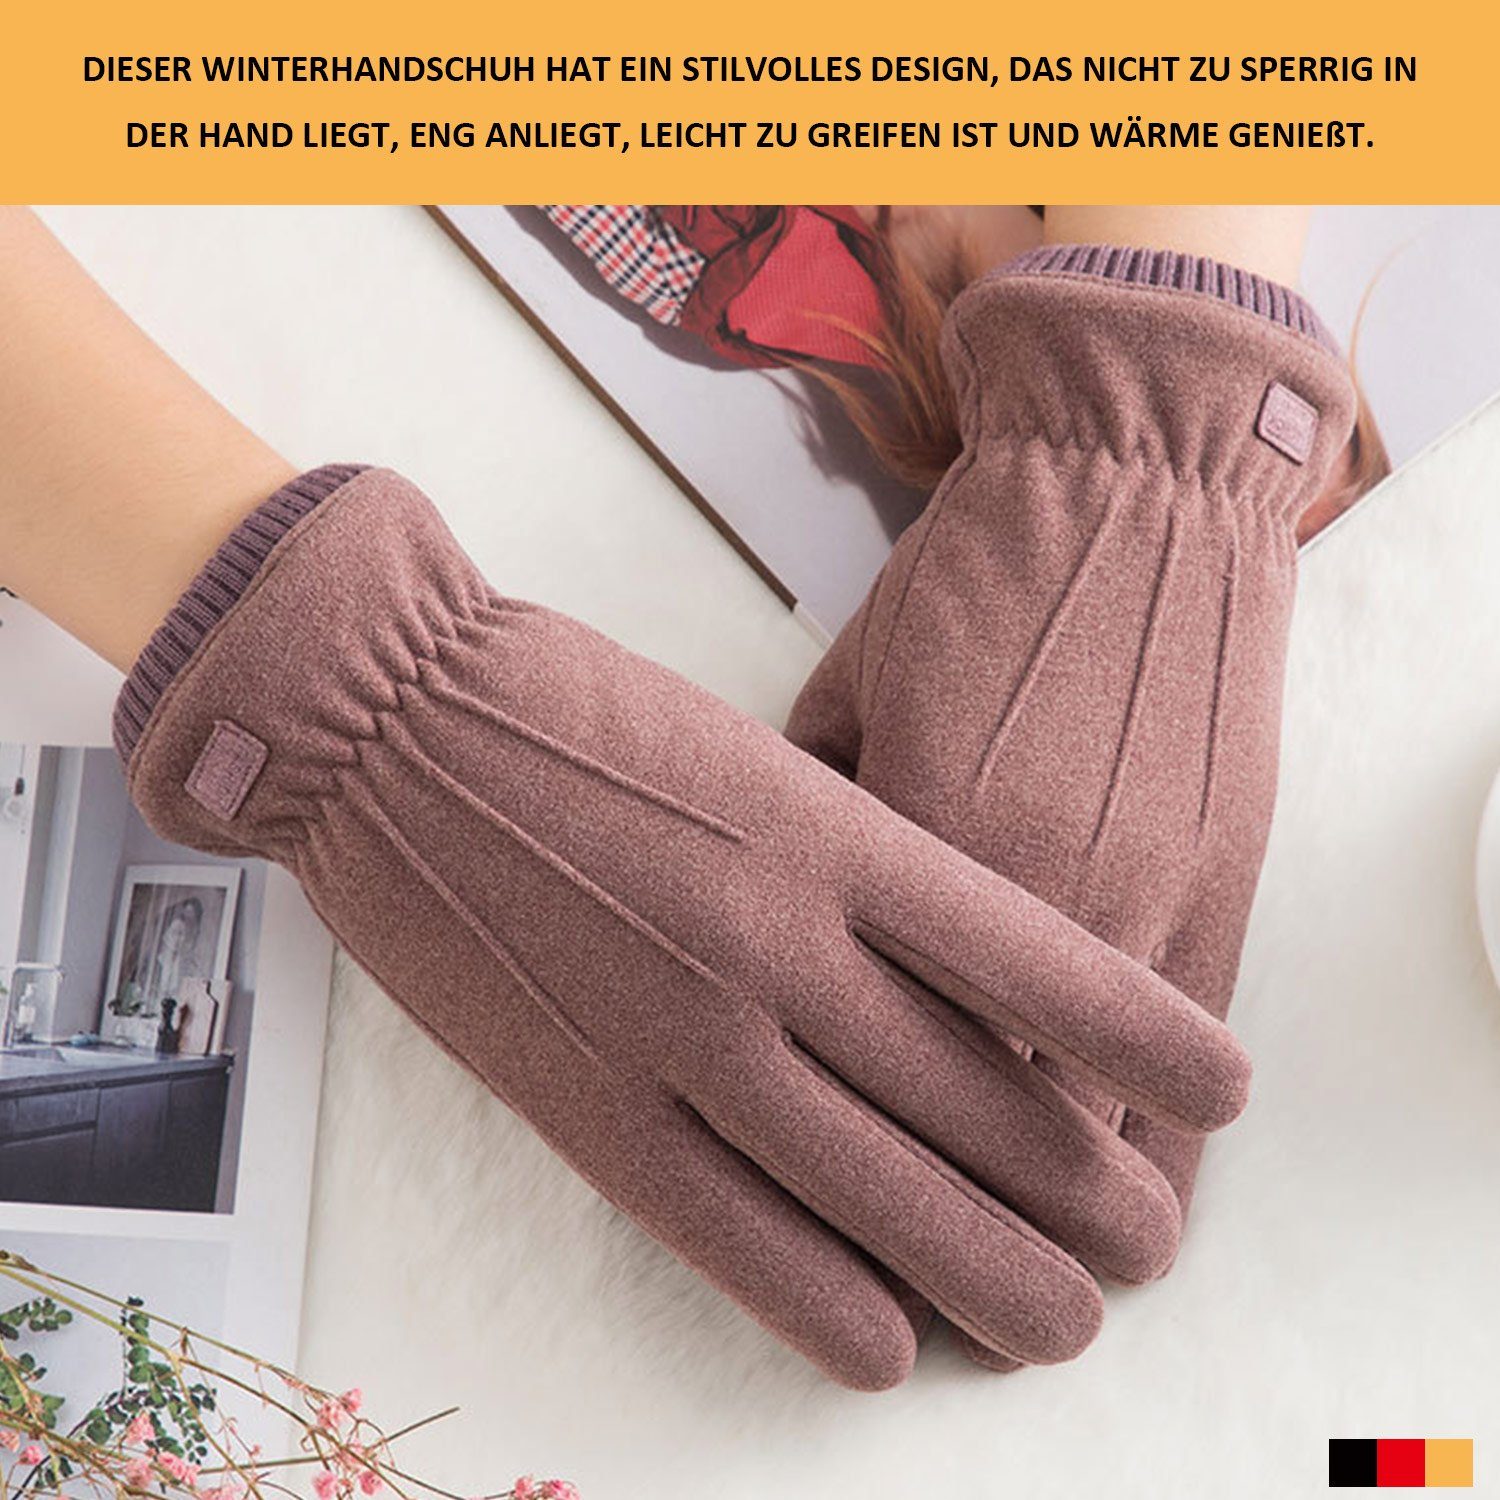 MAGICSHE Fleecehandschuhe Winter Touchscreen Damen Grau Handschuhe Warm